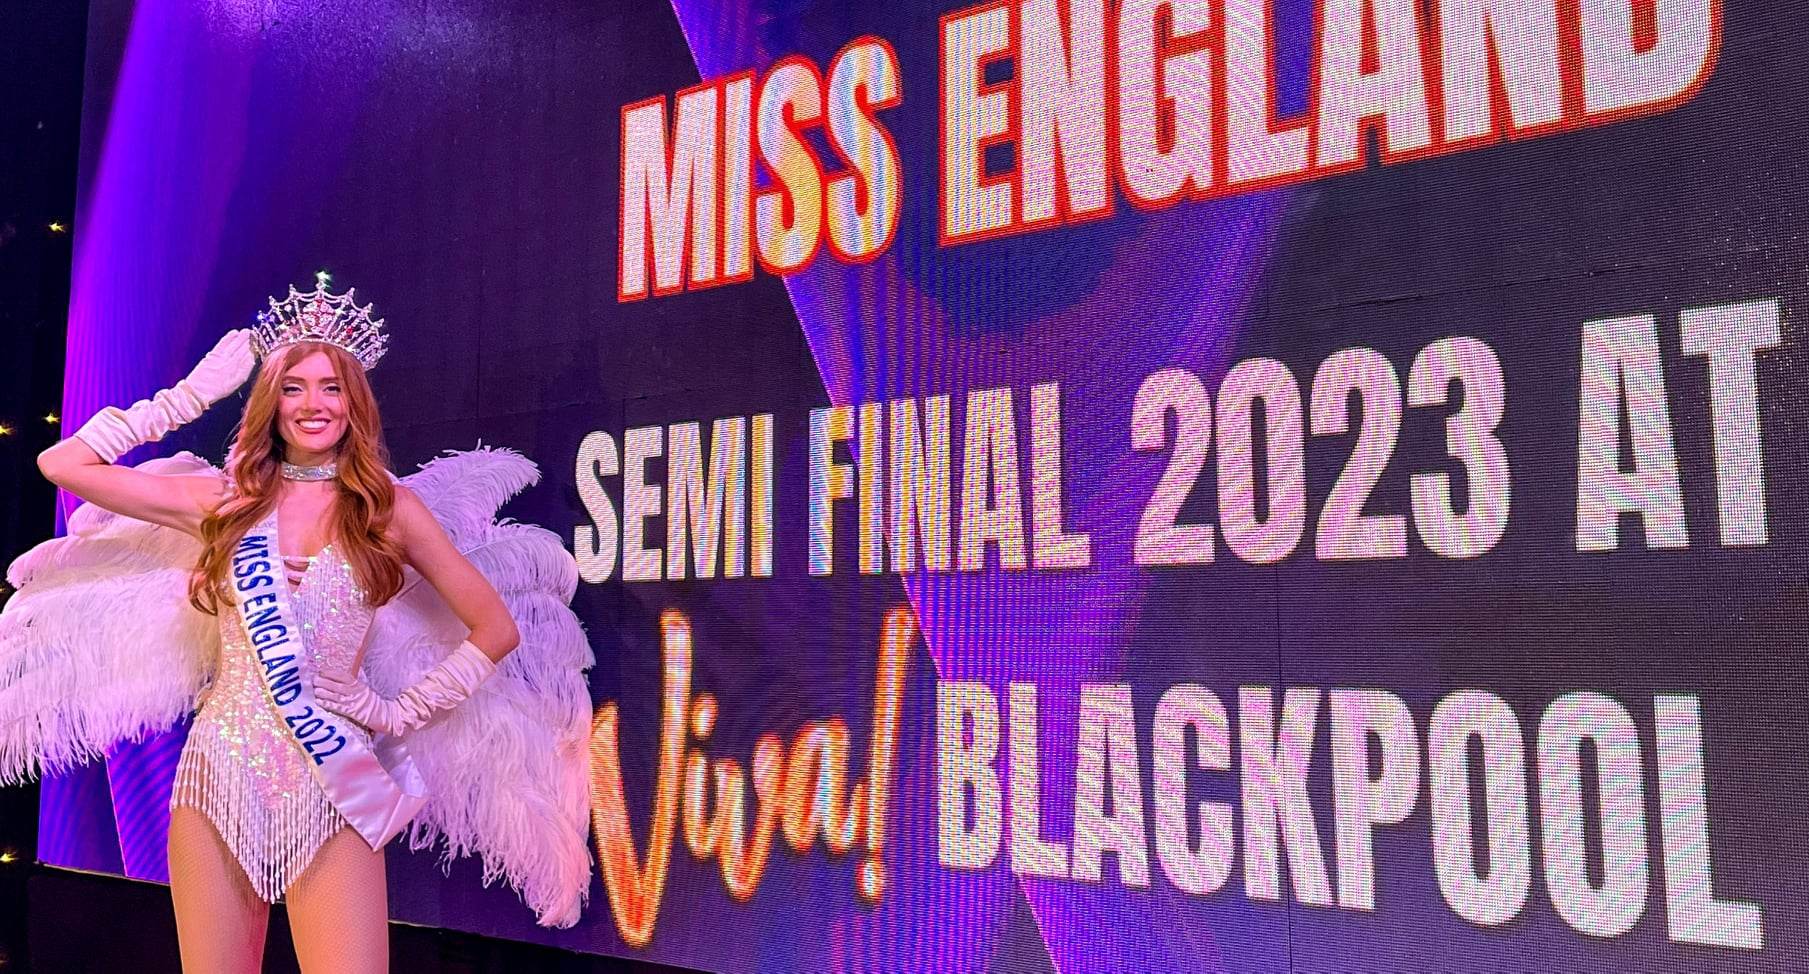 Viva Miss England!